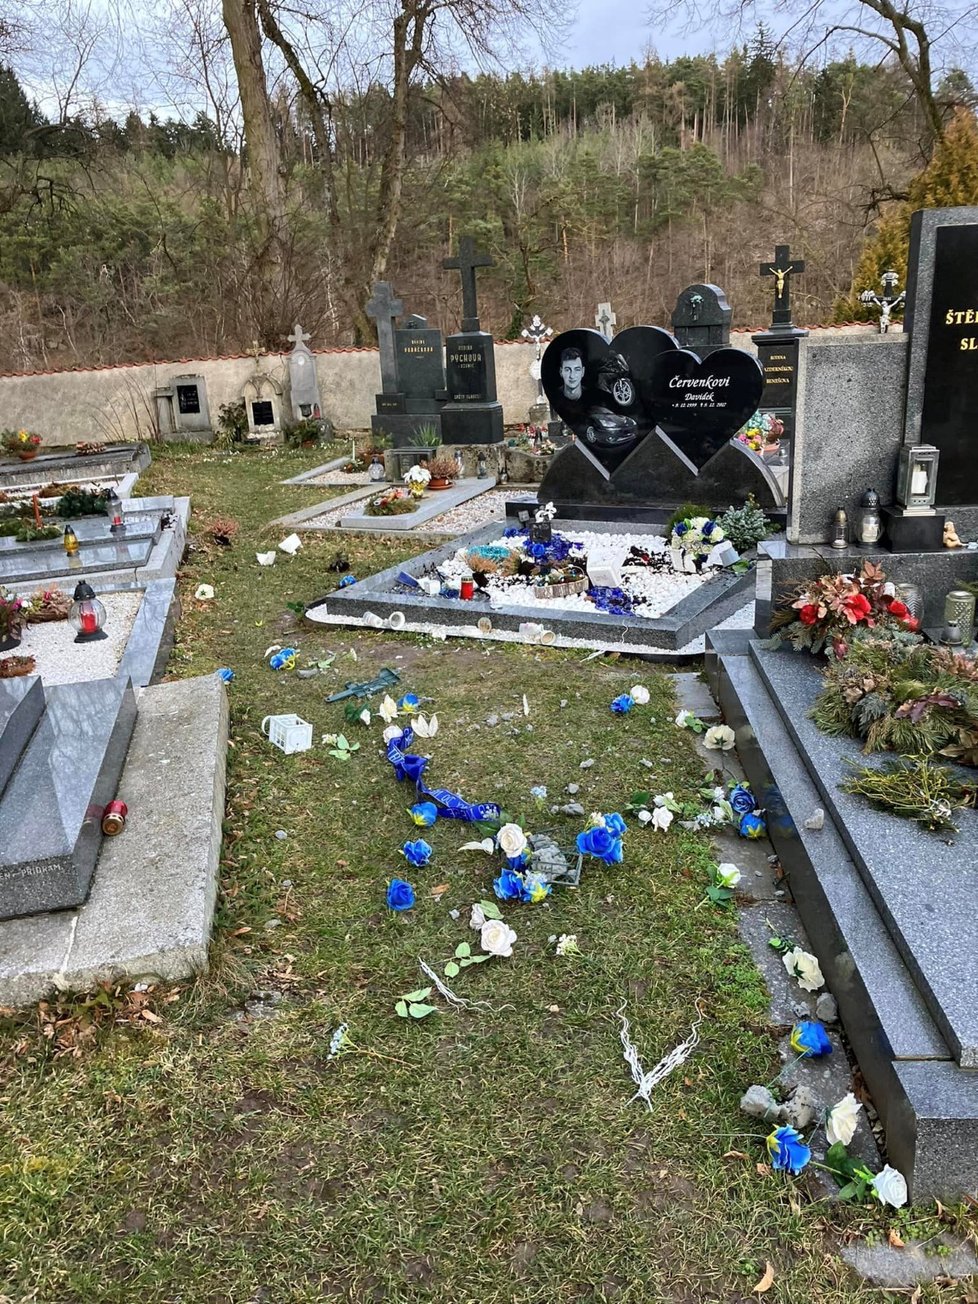 A takhle dopadl Davidův hrob na hřbitově. Místní jsou z šíleného řádění vandala zděšeni.